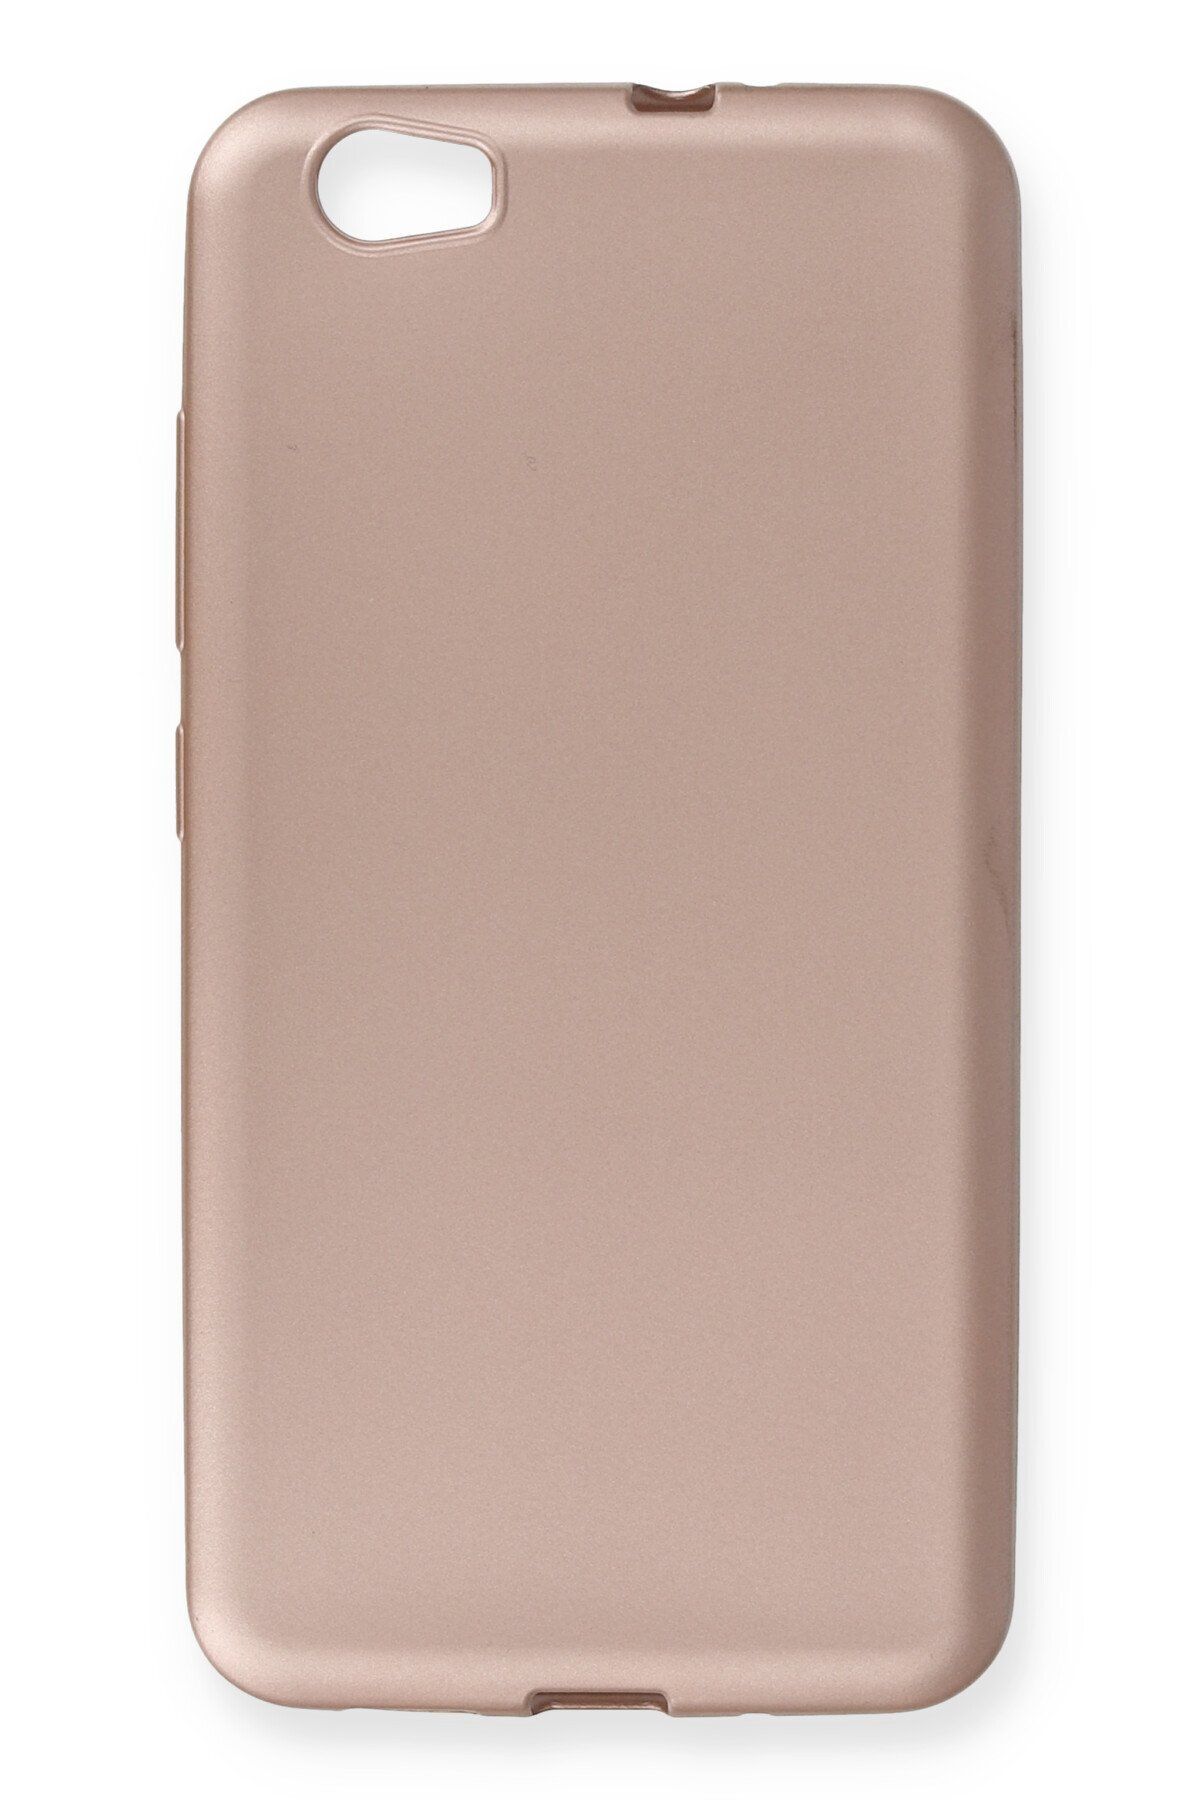 NewFace Vestel Z10 Kılıf Premium Rubber Silikon - Rose Gold 317105